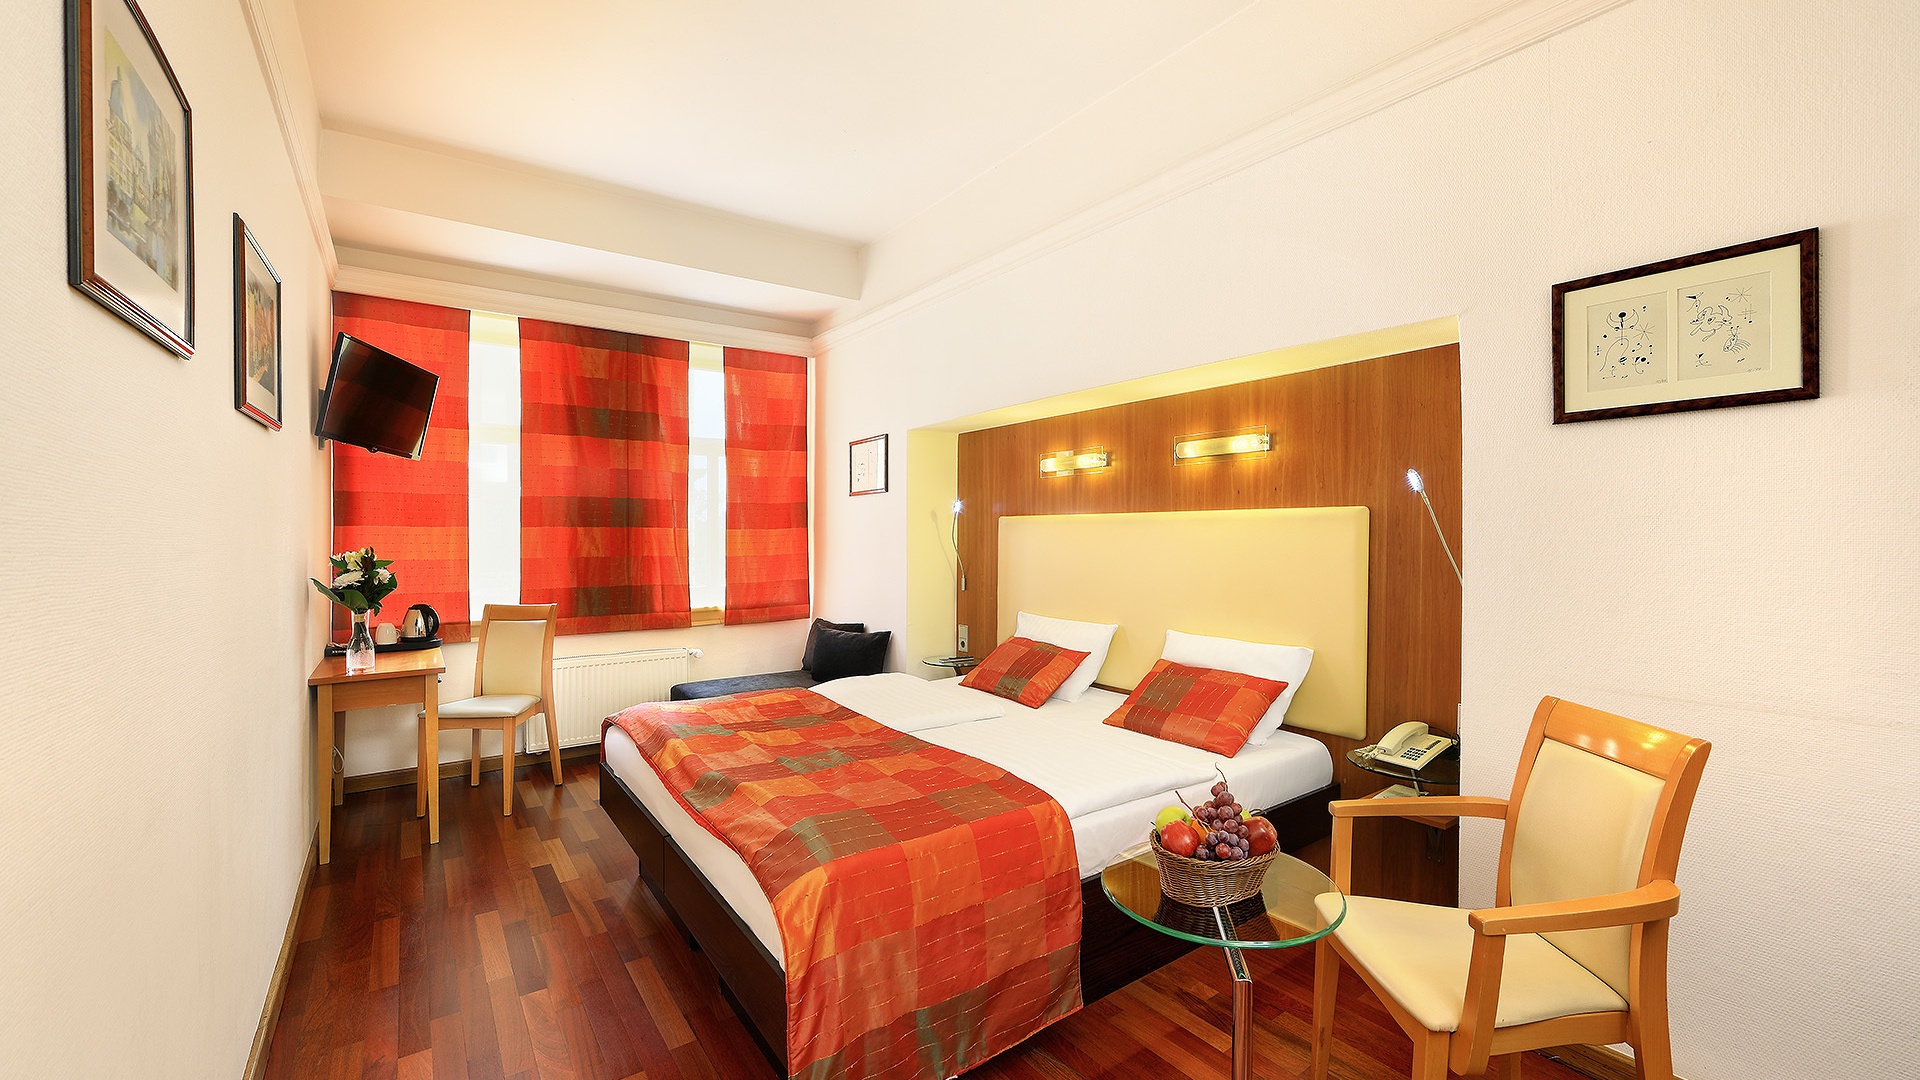 هتل امتیست Amethyst Hotel Prahاز لوکس ترین هتل های پراگ